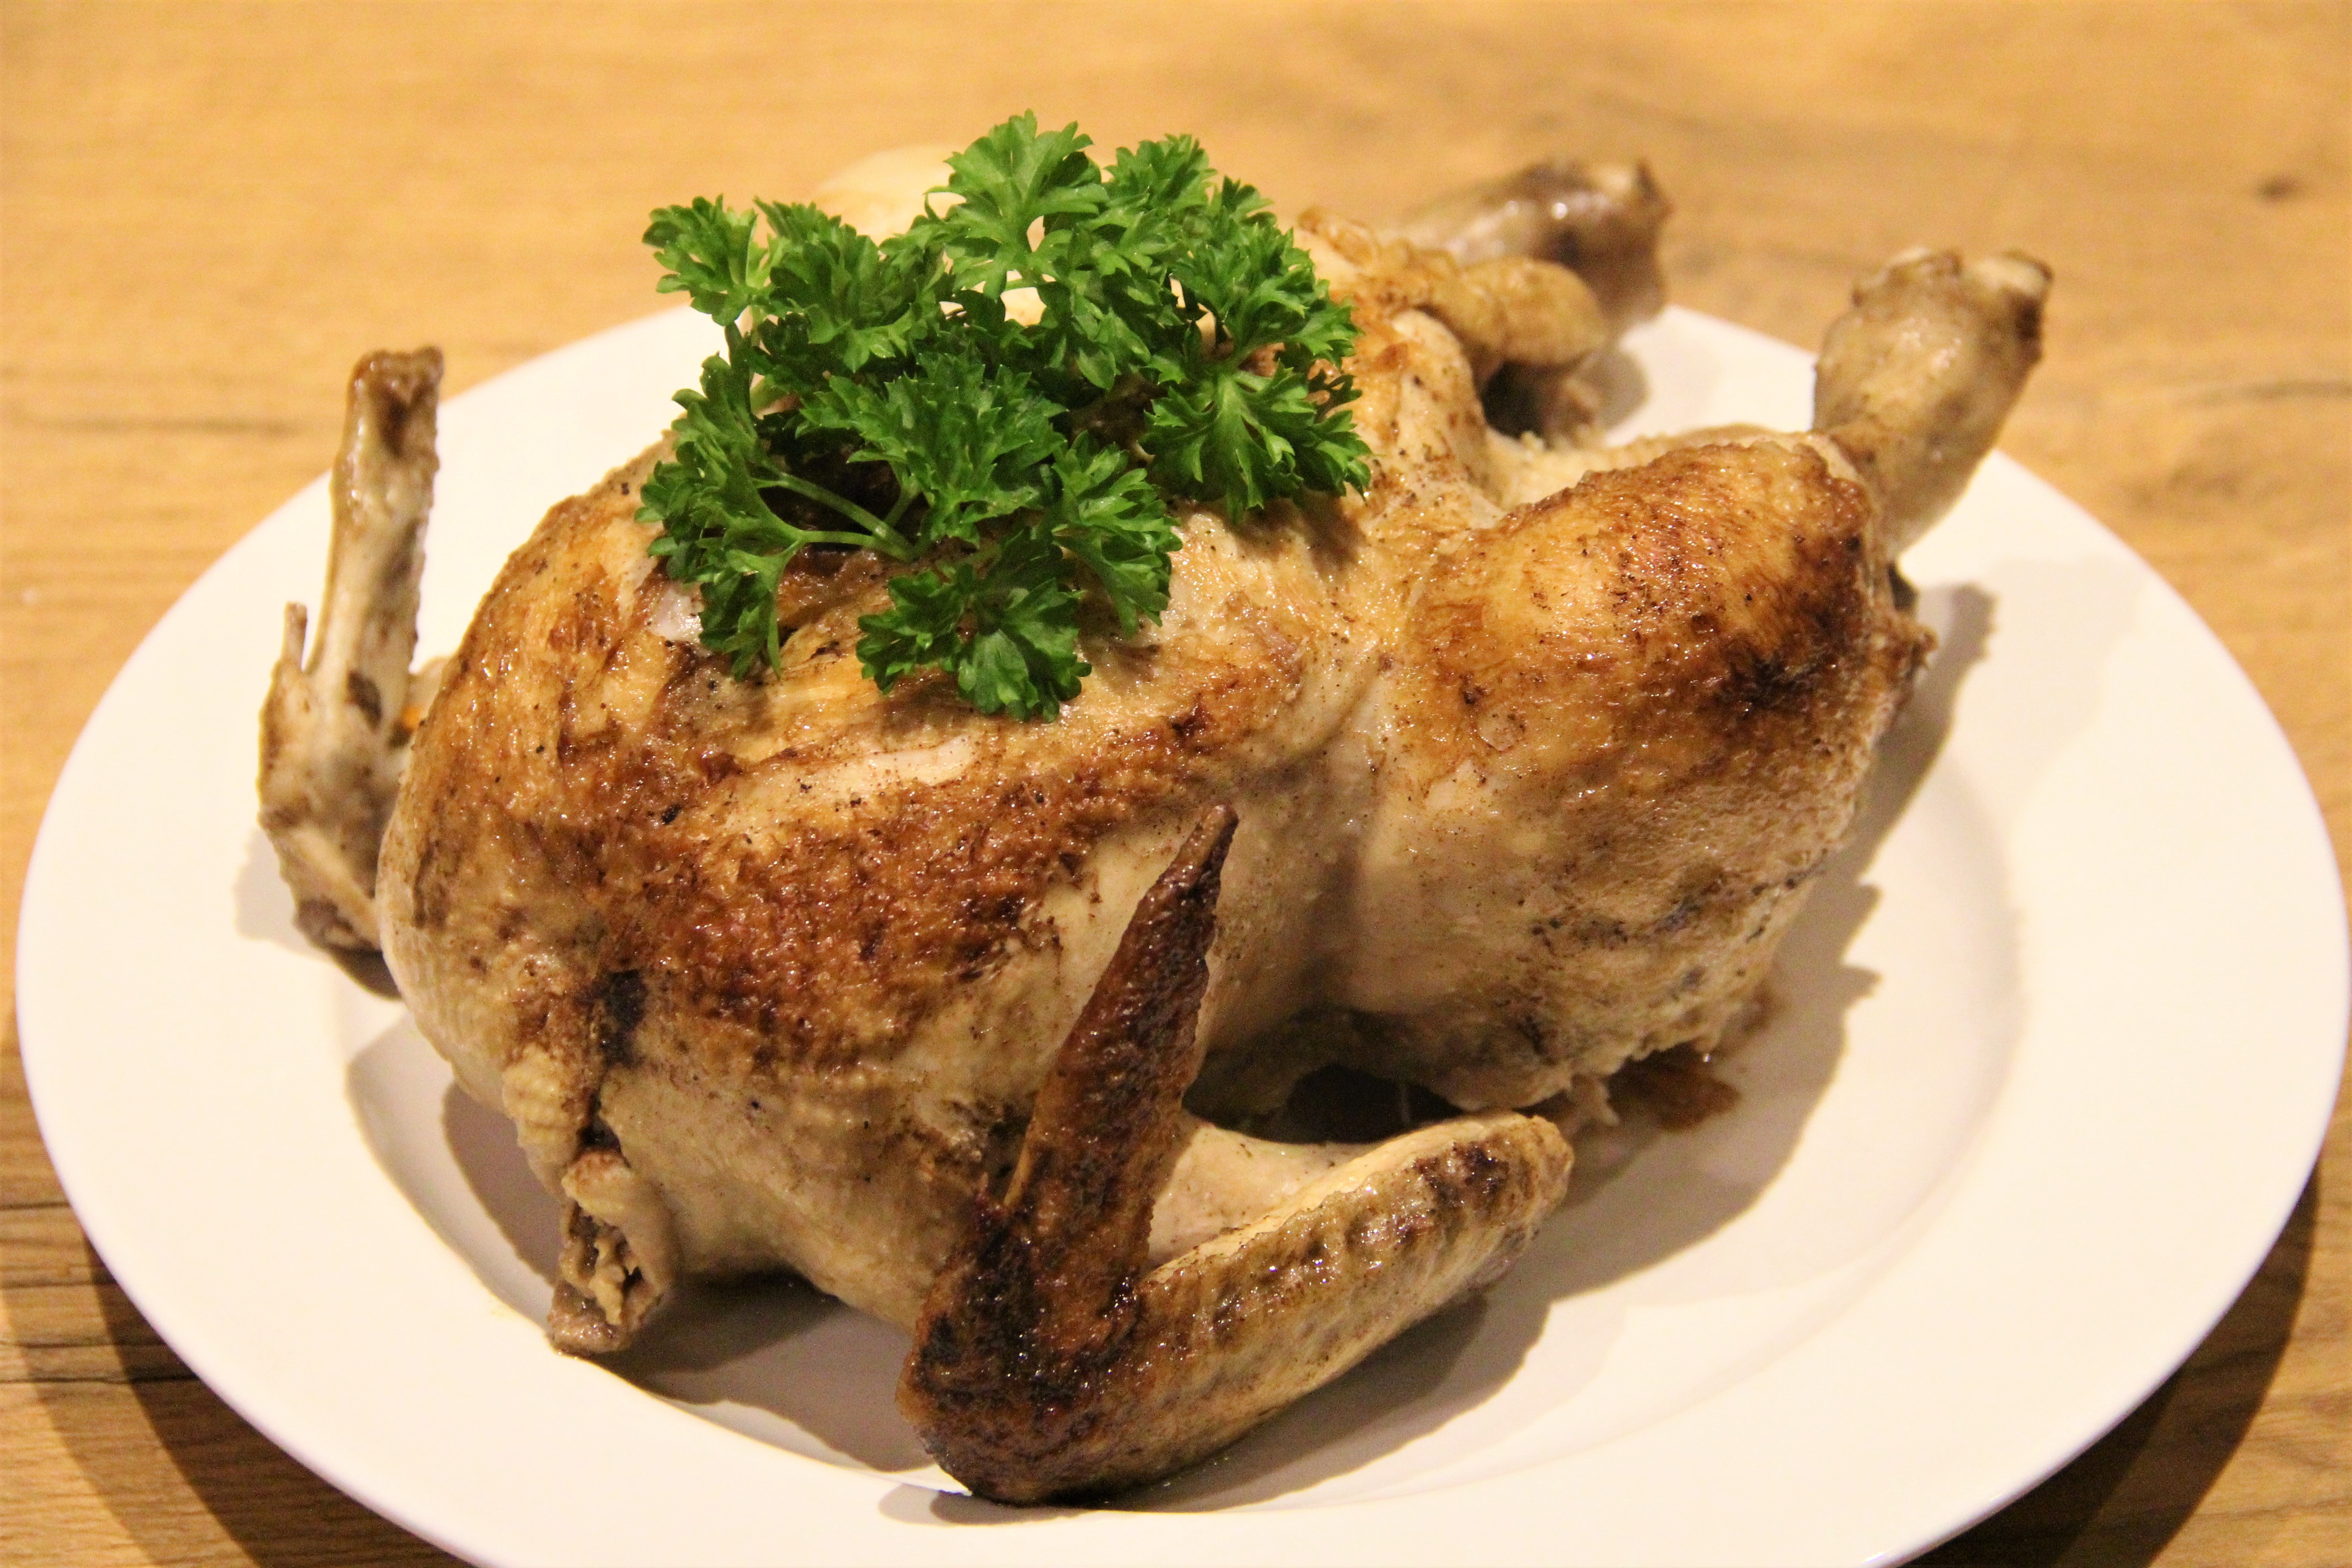 Grydestegt kylling - kylling med og agurkesalat - Bord